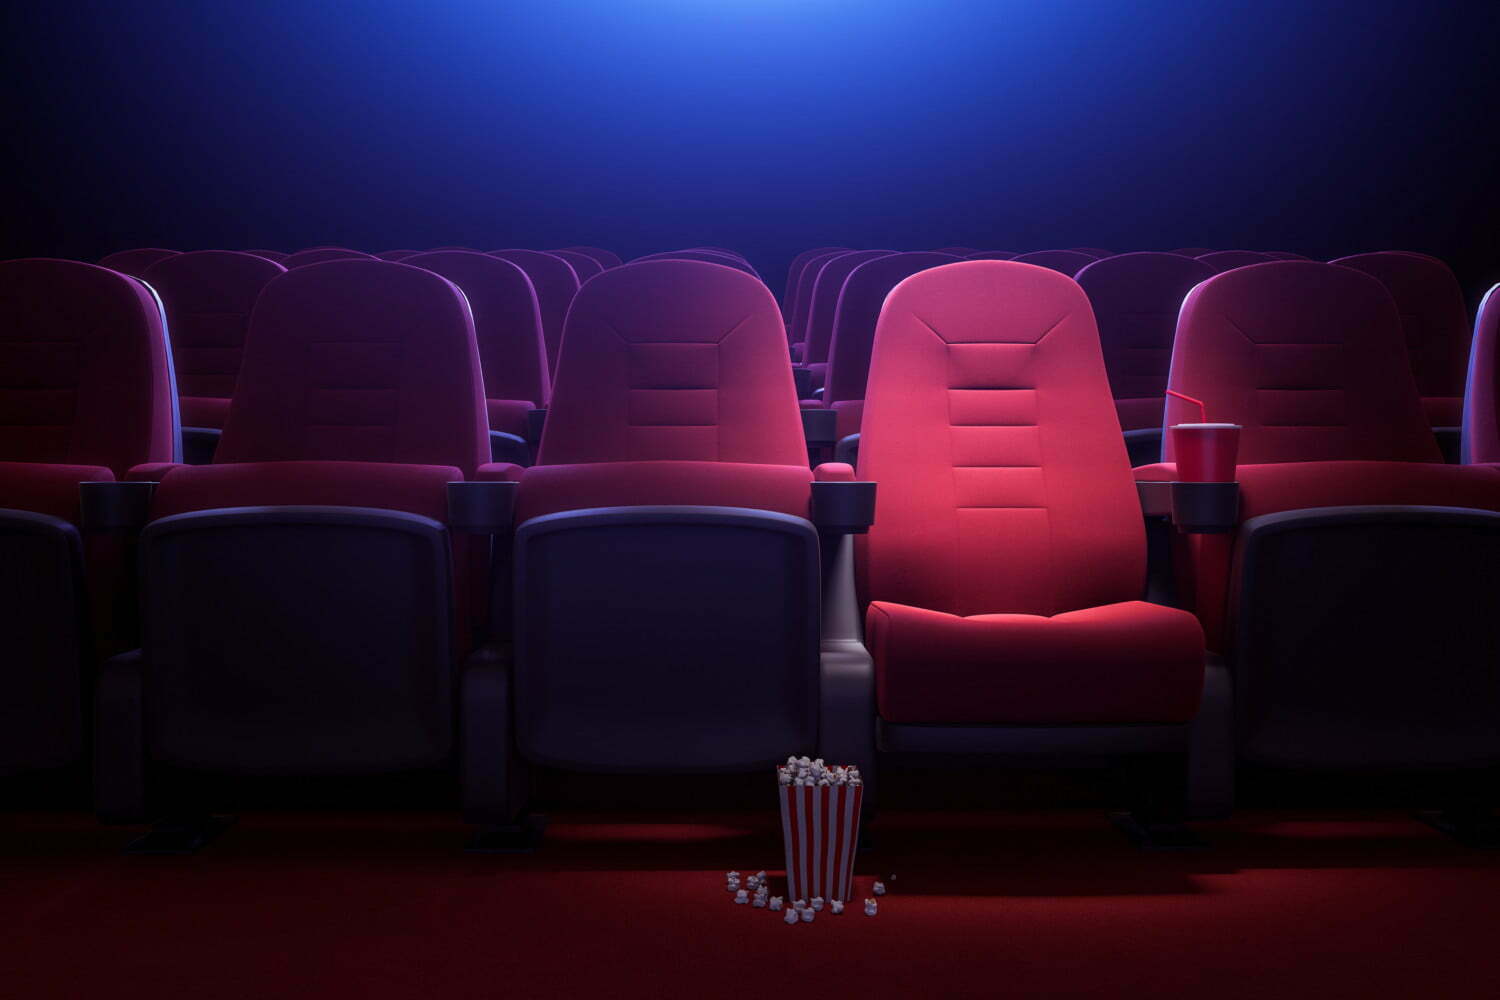 Hollywood geht neue Wege: Künstliche Intelligenz soll Kinos retten